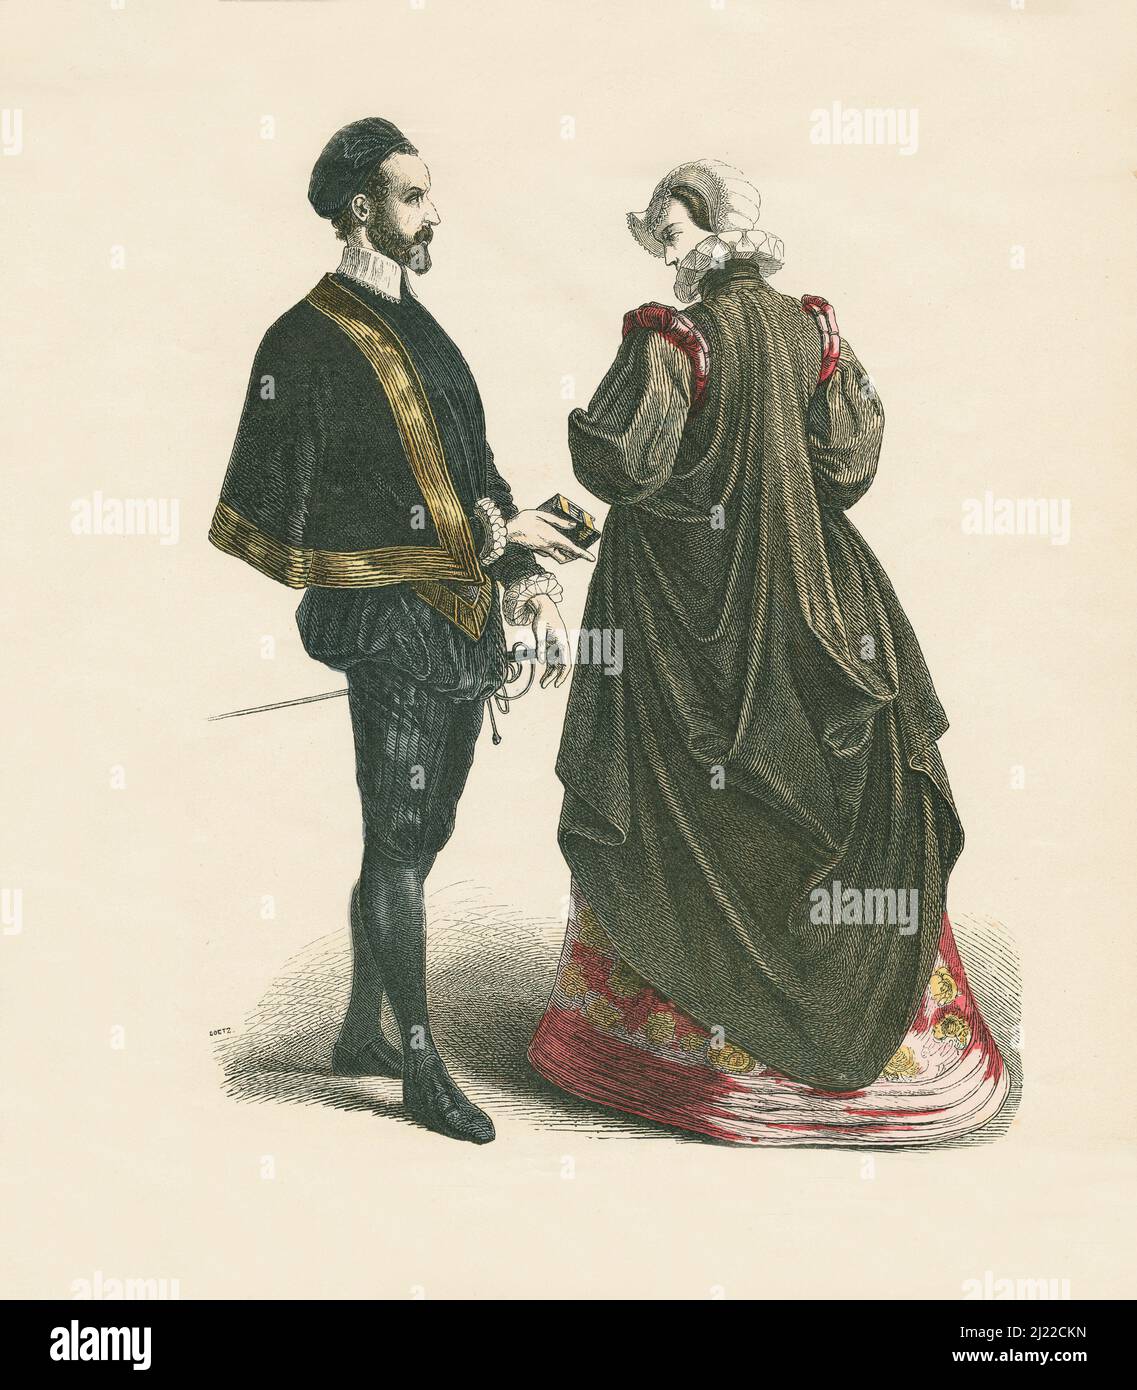 French Court Dress, secondo terzo del 16th secolo, Illustrazione, la Storia del Costume, Braun & Schneider, Monaco di Baviera, Germania, 1861-1880 Foto Stock